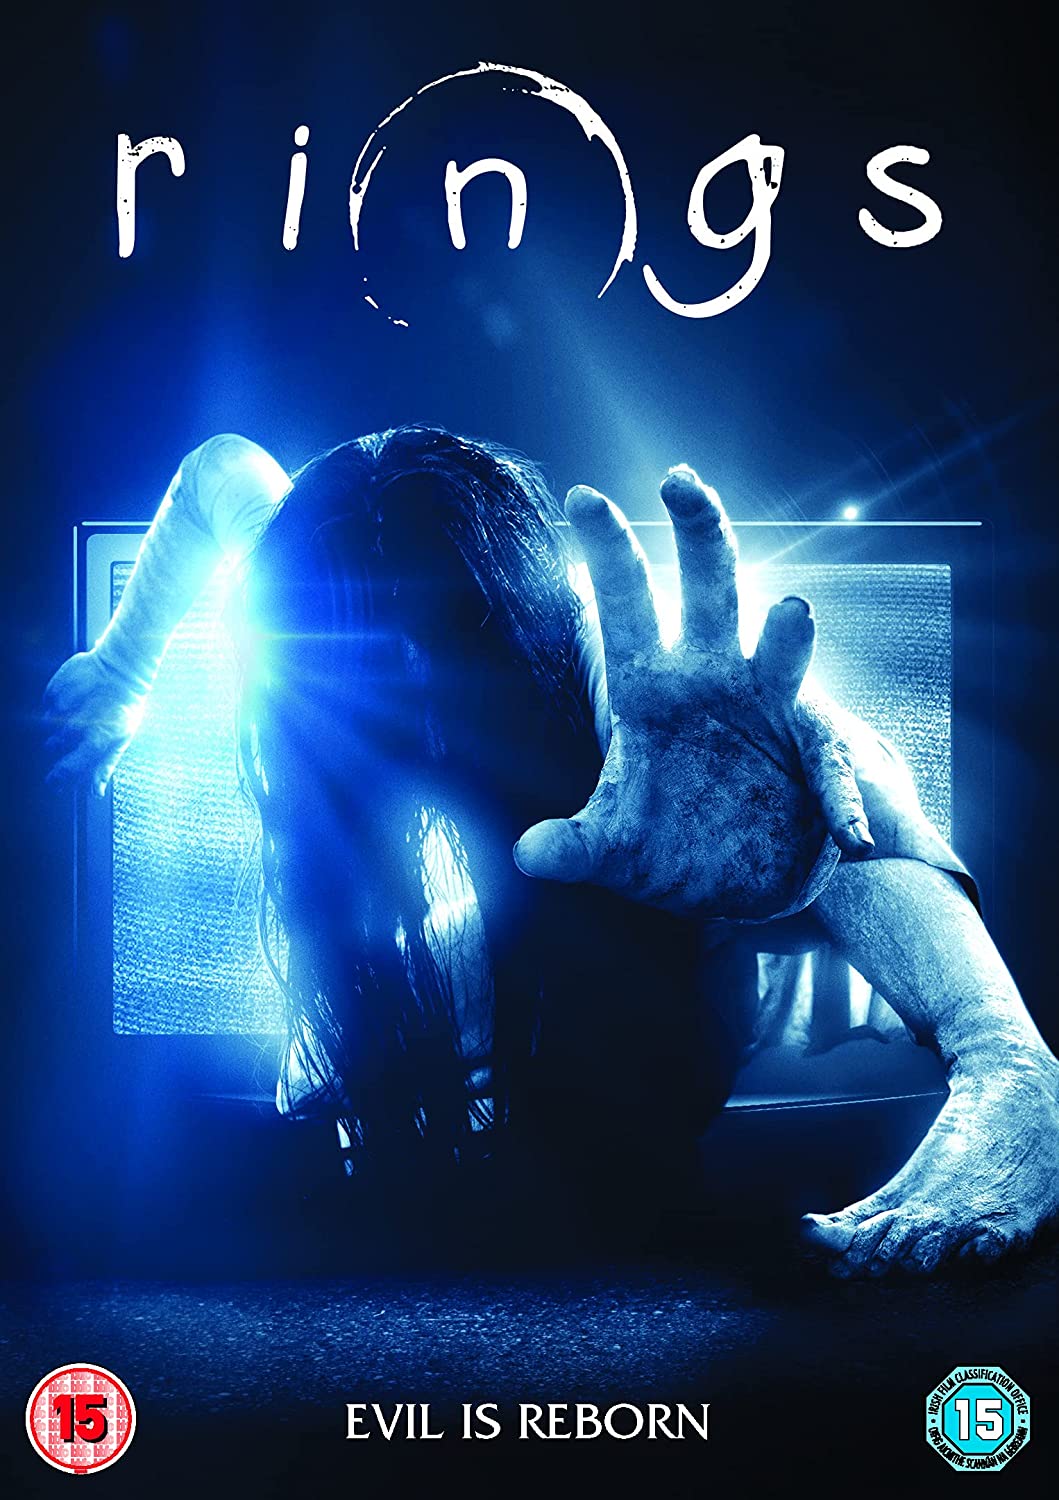 RINGS [2017] - Horror [DVD]